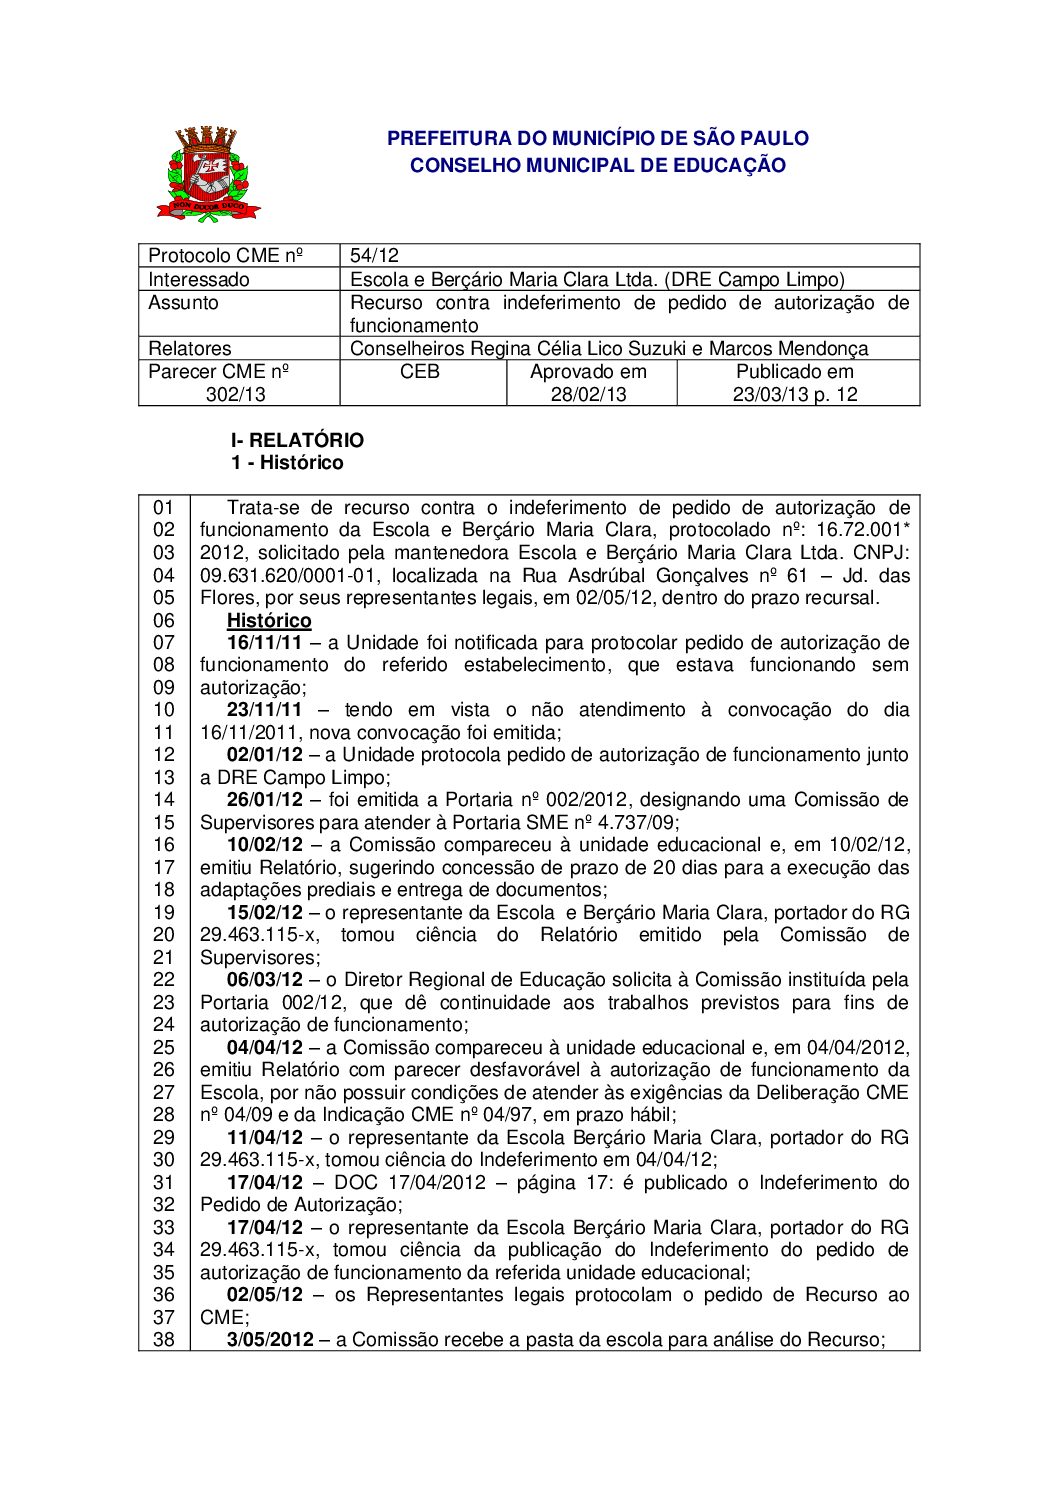 Parecer CME nº 302/2013 - Escola e Berçário Maria Clara Ltda. (DRE Campo Limpo) - Recurso contra indeferimento de pedido de autorização de funcionamento 